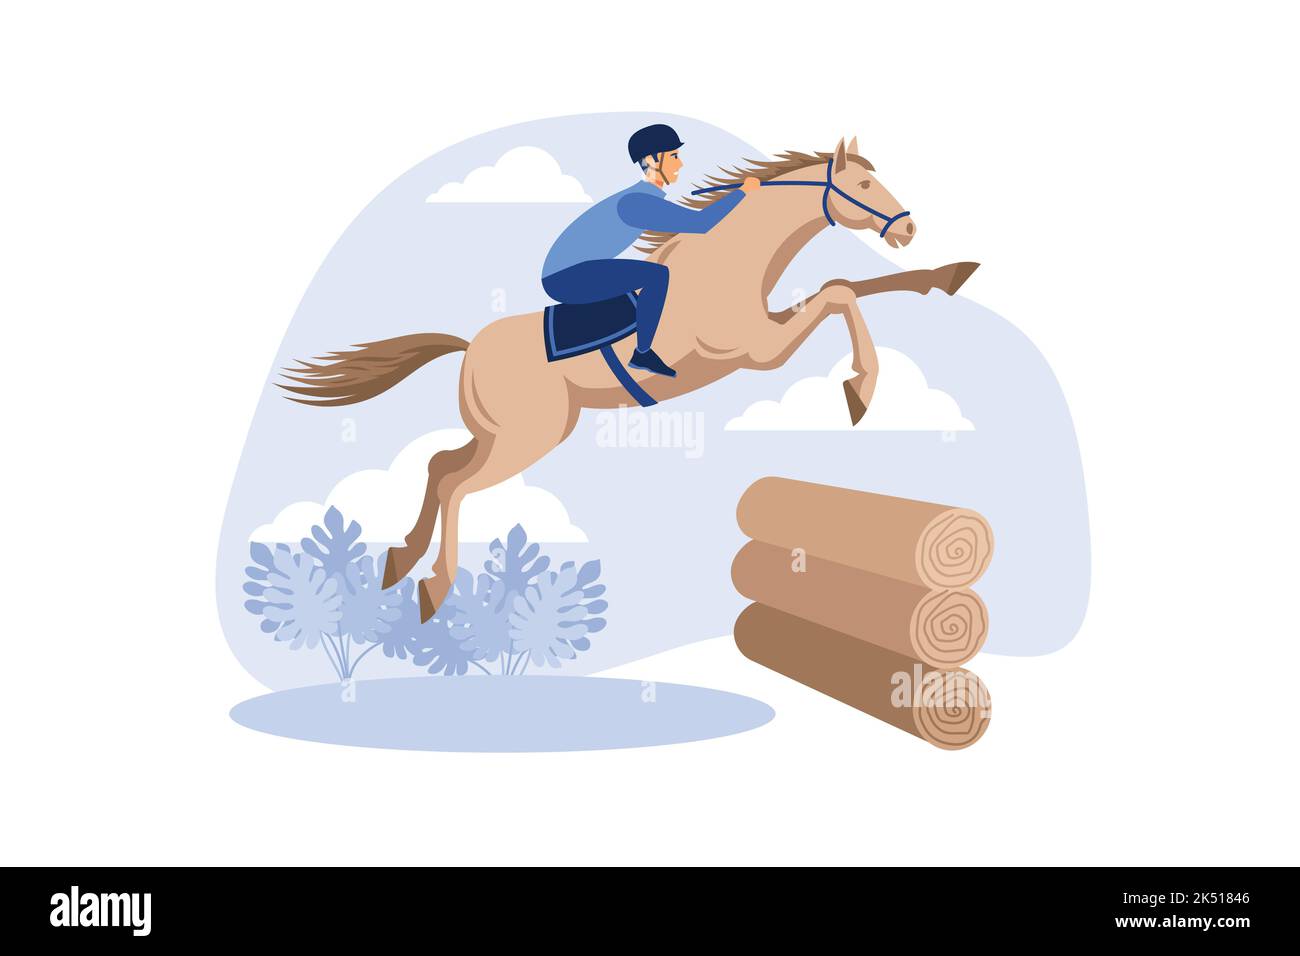 Equitazione Eventing. Illustrazione di un cavallo con un cavaliere che salta sopra la barriera dalle cabine di legno. Un cavaliere su un cavallo salta su un obs Illustrazione Vettoriale